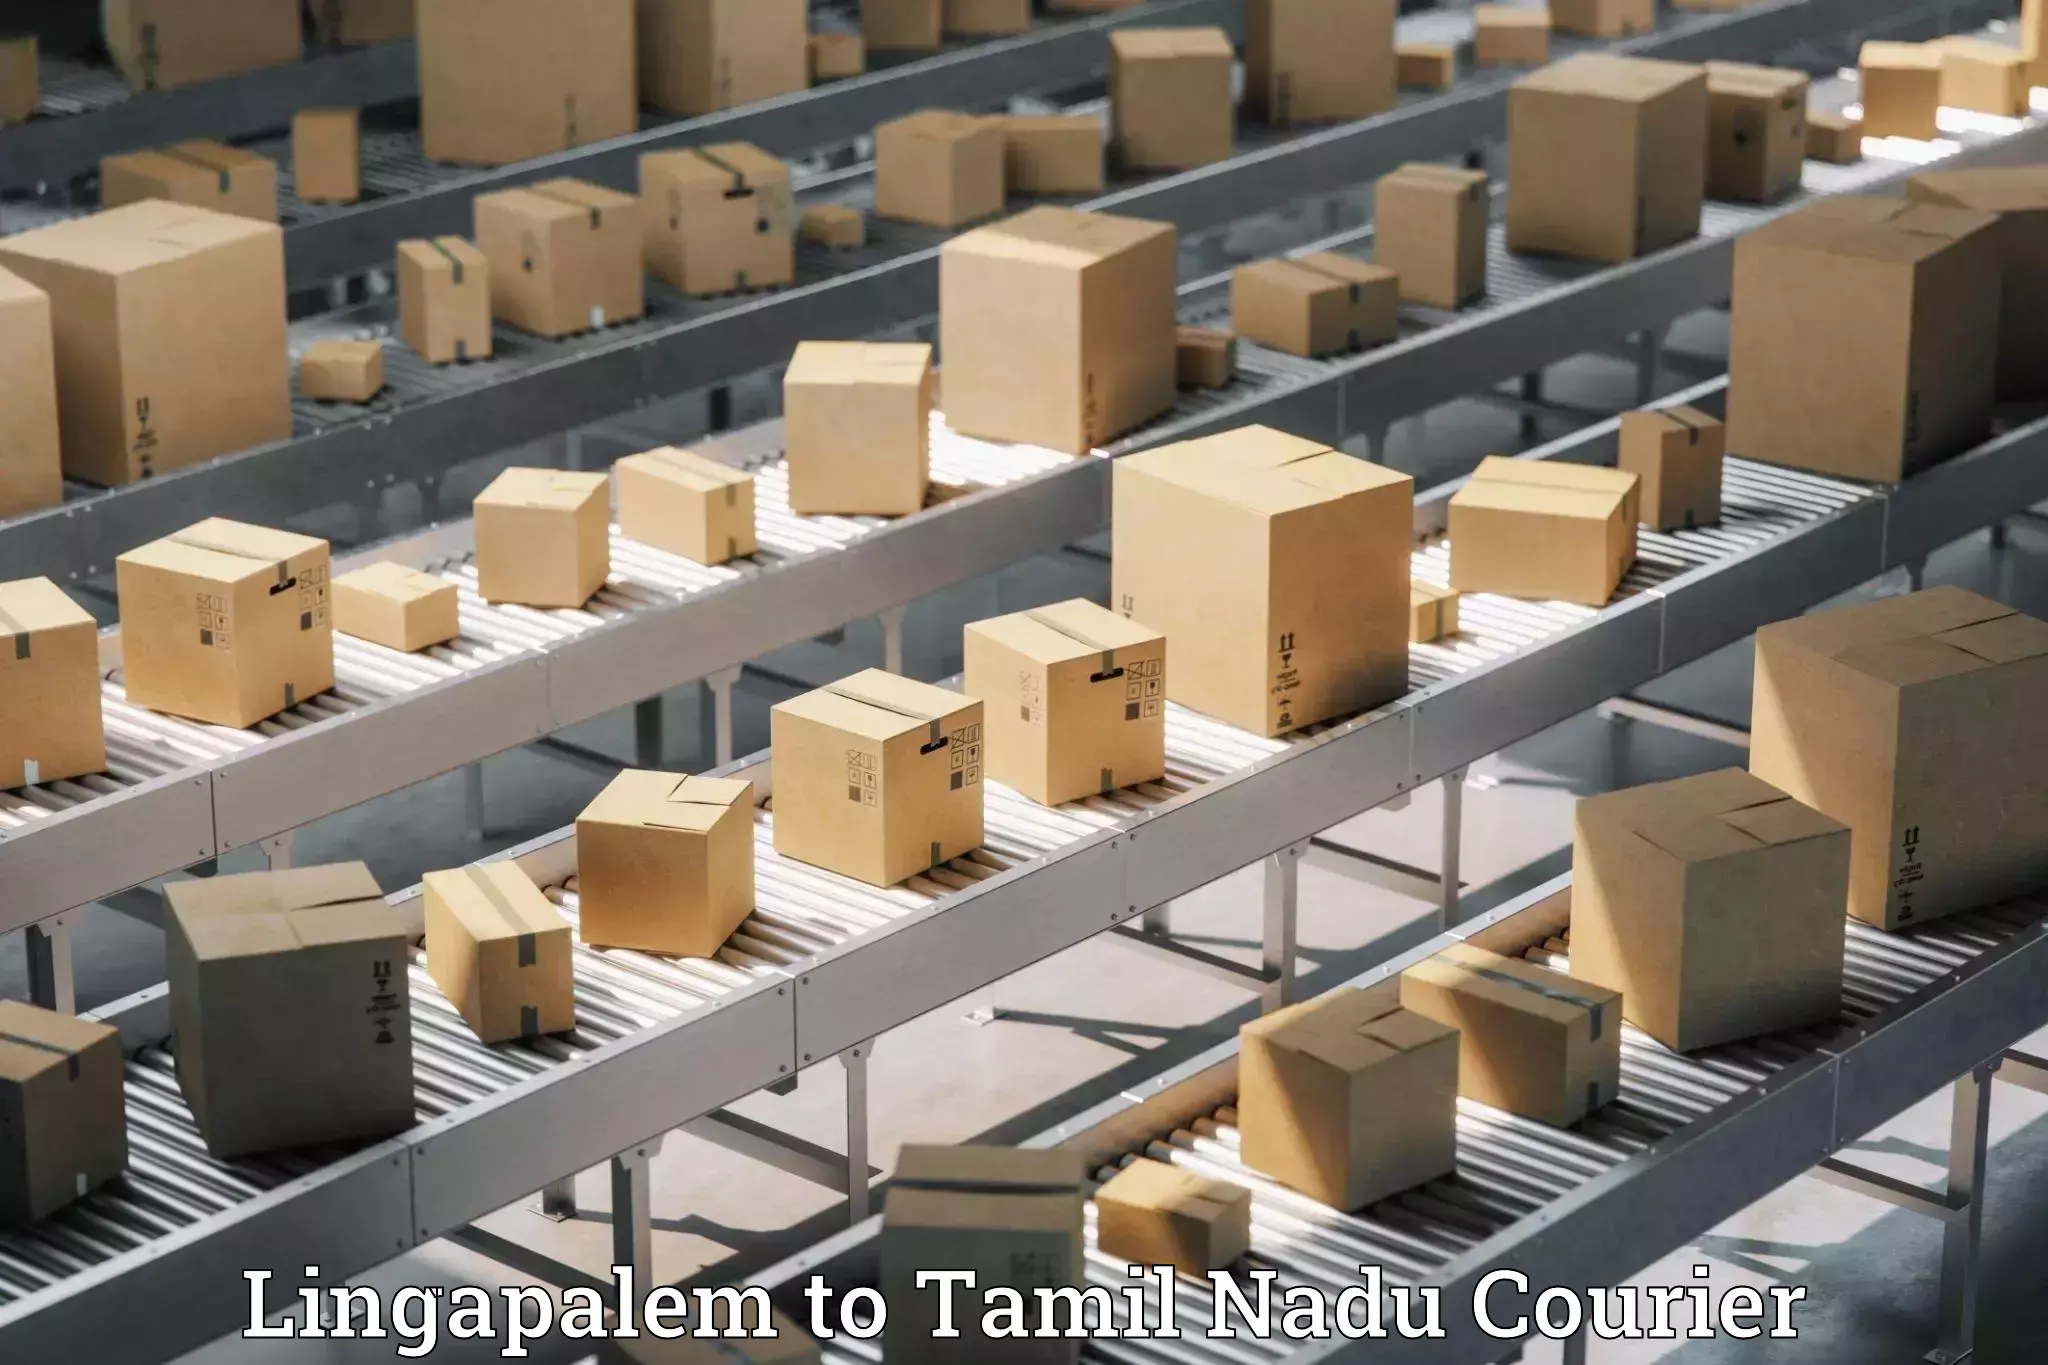 Global logistics network Lingapalem to Thiruthuraipoondi